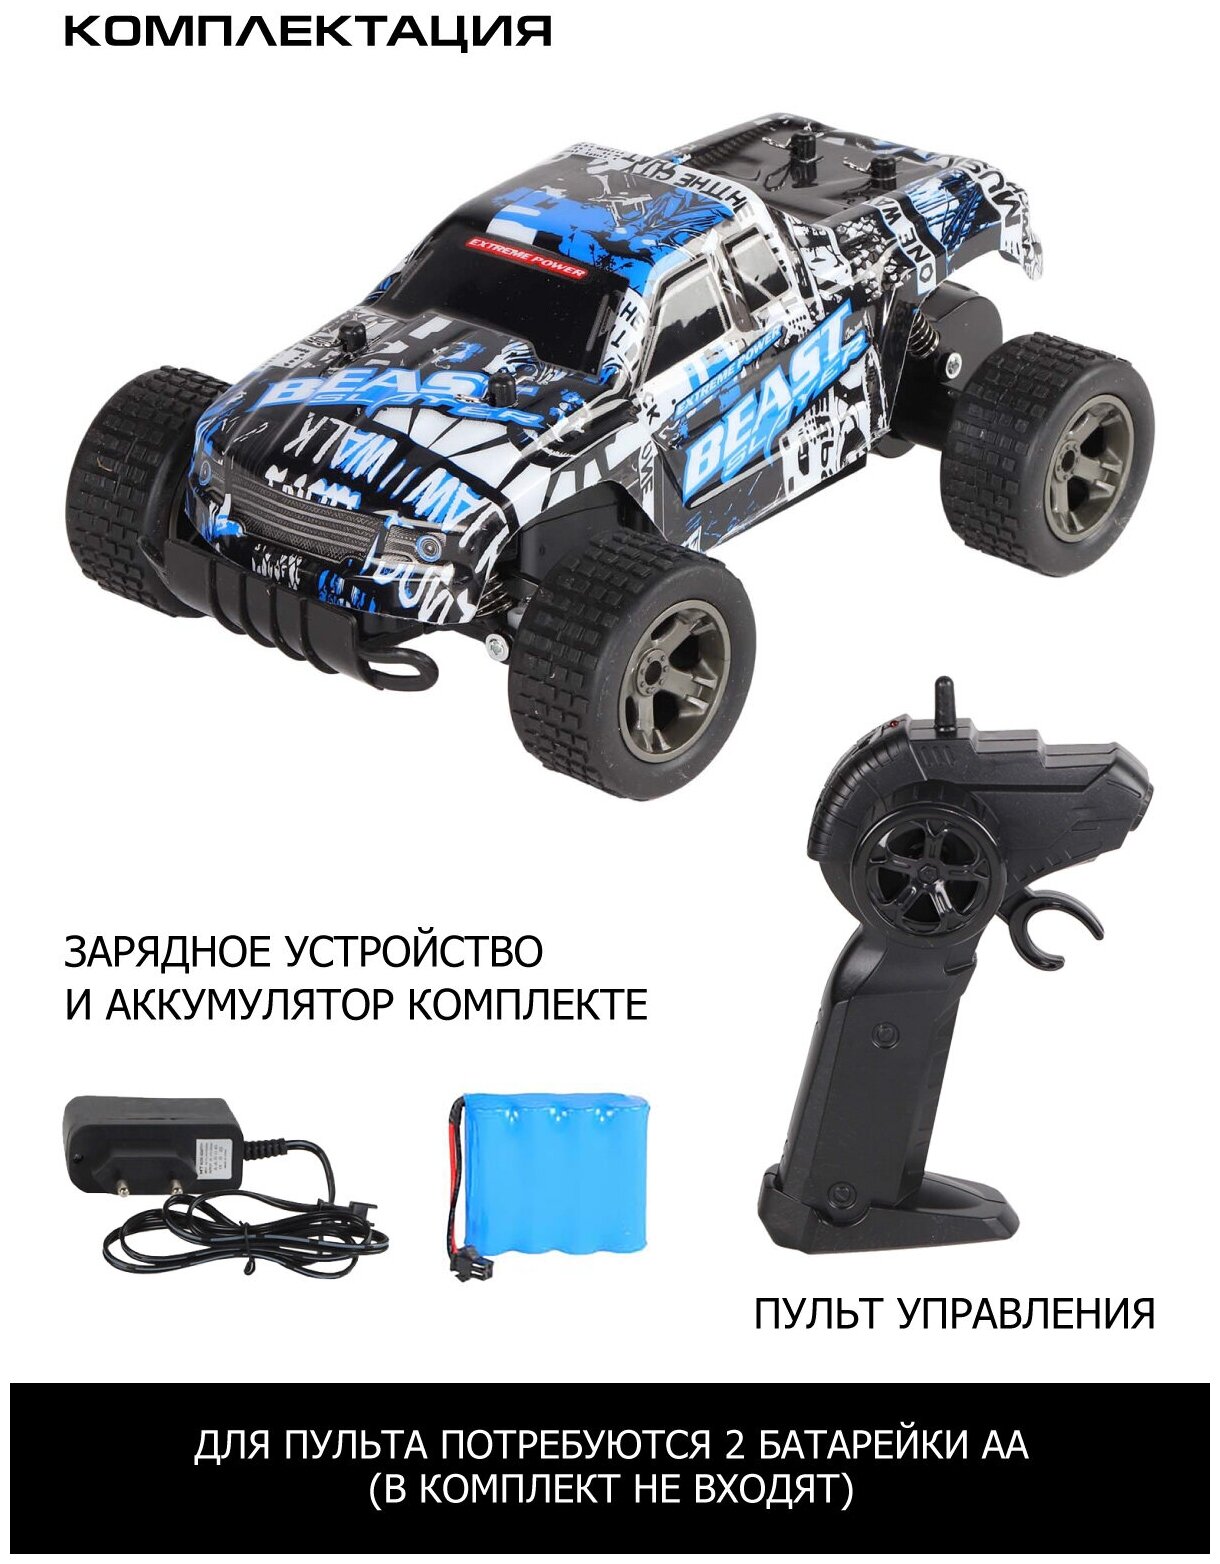 Радиоуправляемая скоростная машинка ТМ AUTODRIVE игрушка для детей для мальчиков 24GHz М1:18 пульт управления скорость до 14 км/ч